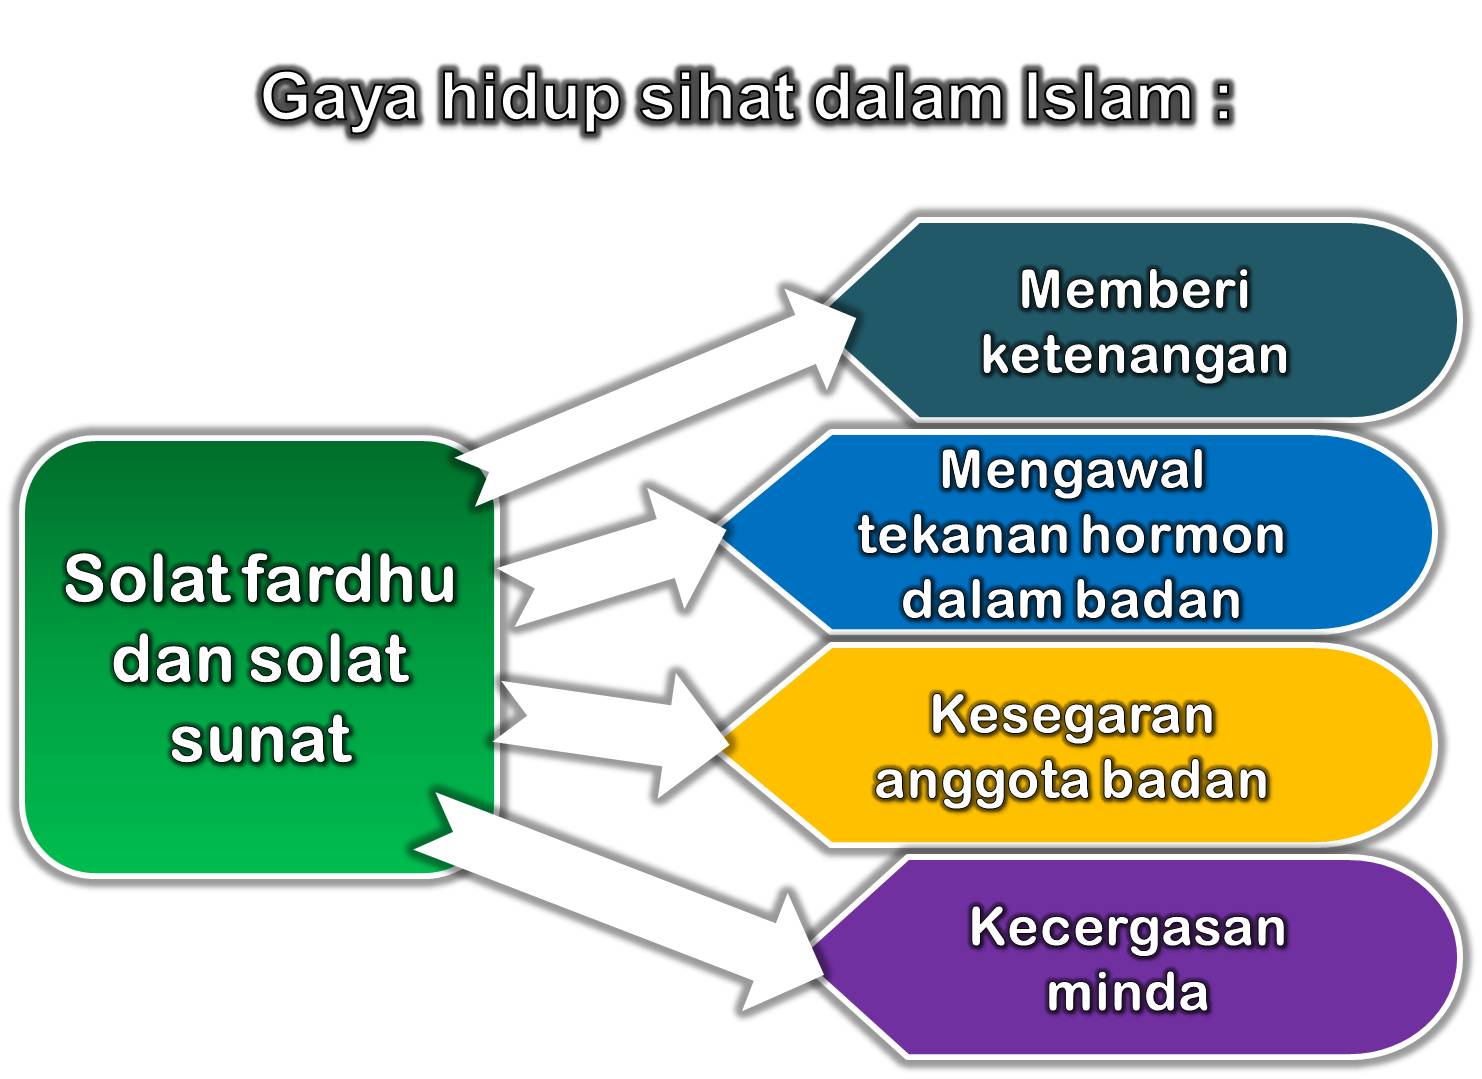 GAYA HIDUP SIHAT MASYARAKAT ISLAM MALAYSIA  mutiaraislam 